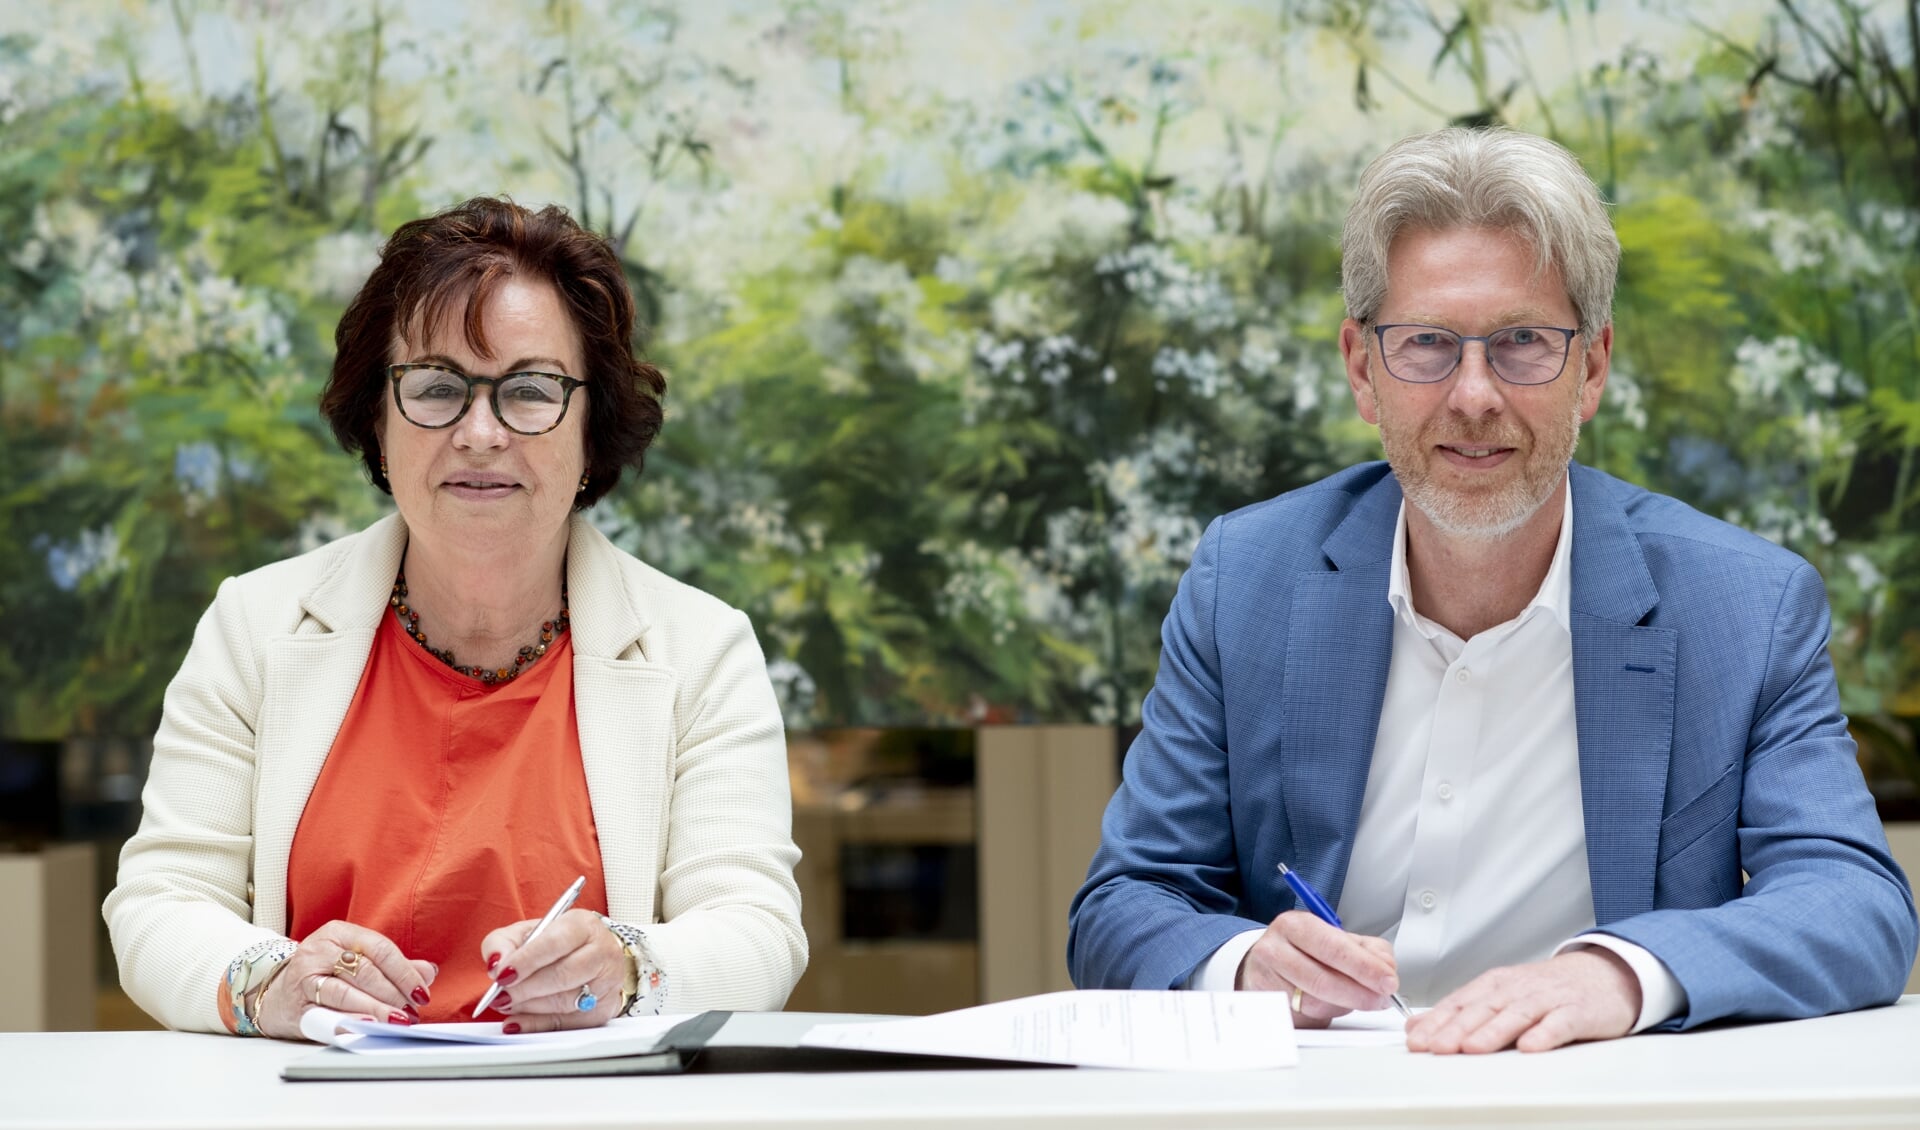 De - laatste - officiële handeling van Annet van der Hoek namens Wetterskip Fryslân, en van Johannes Boonstra namens Wetsus.